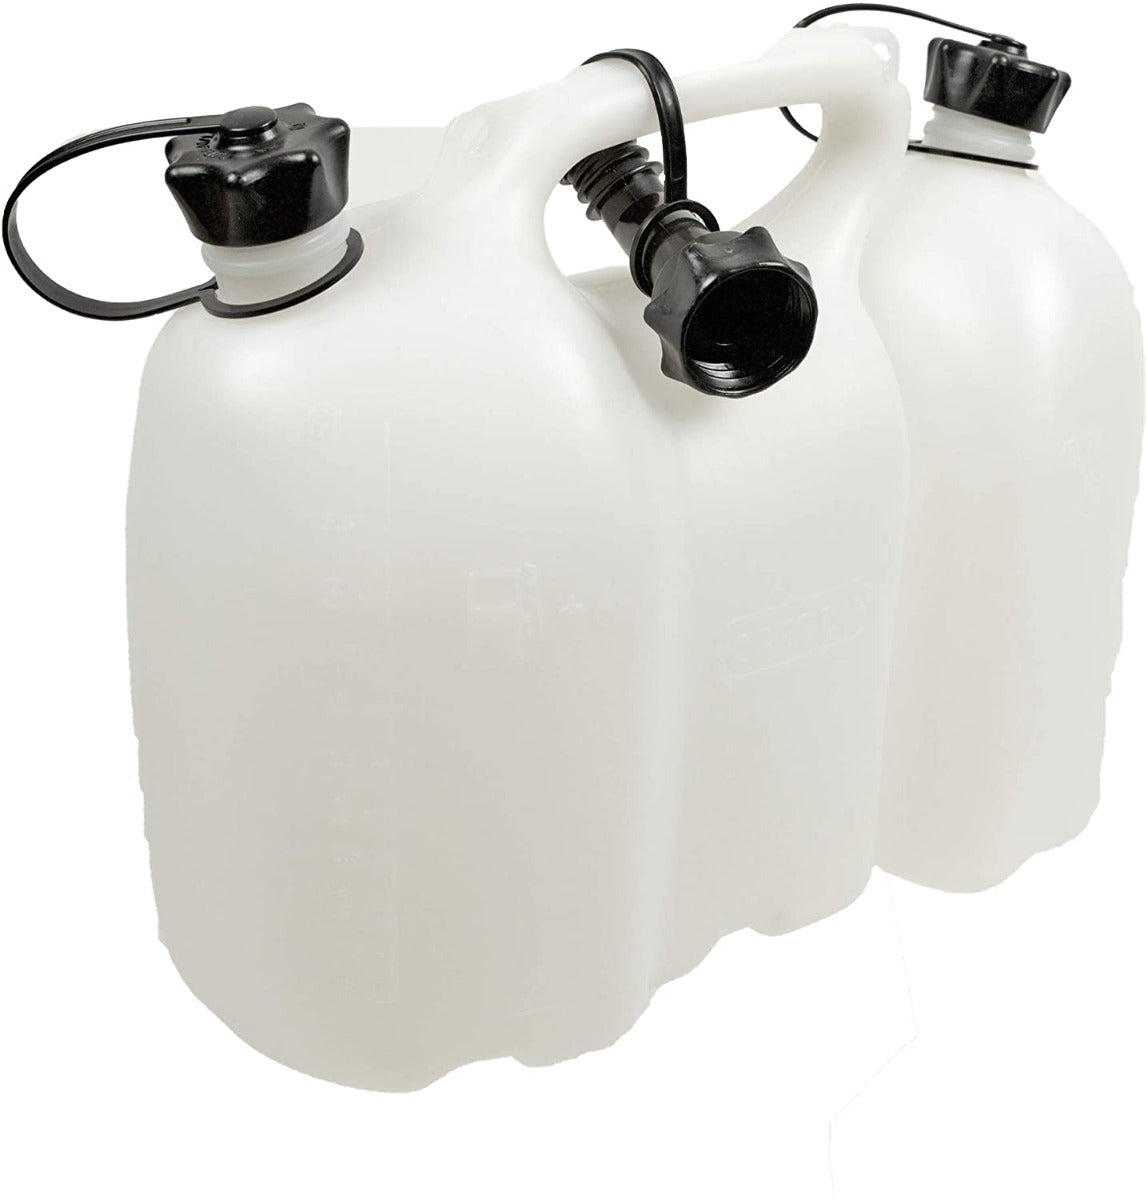 Oregon Kombibehälter/Kanister für Kraftstoff und Öl für die Kettensägekette, mit Skala und Sicherheitsverschluss, 6 Liter + 3 Liter